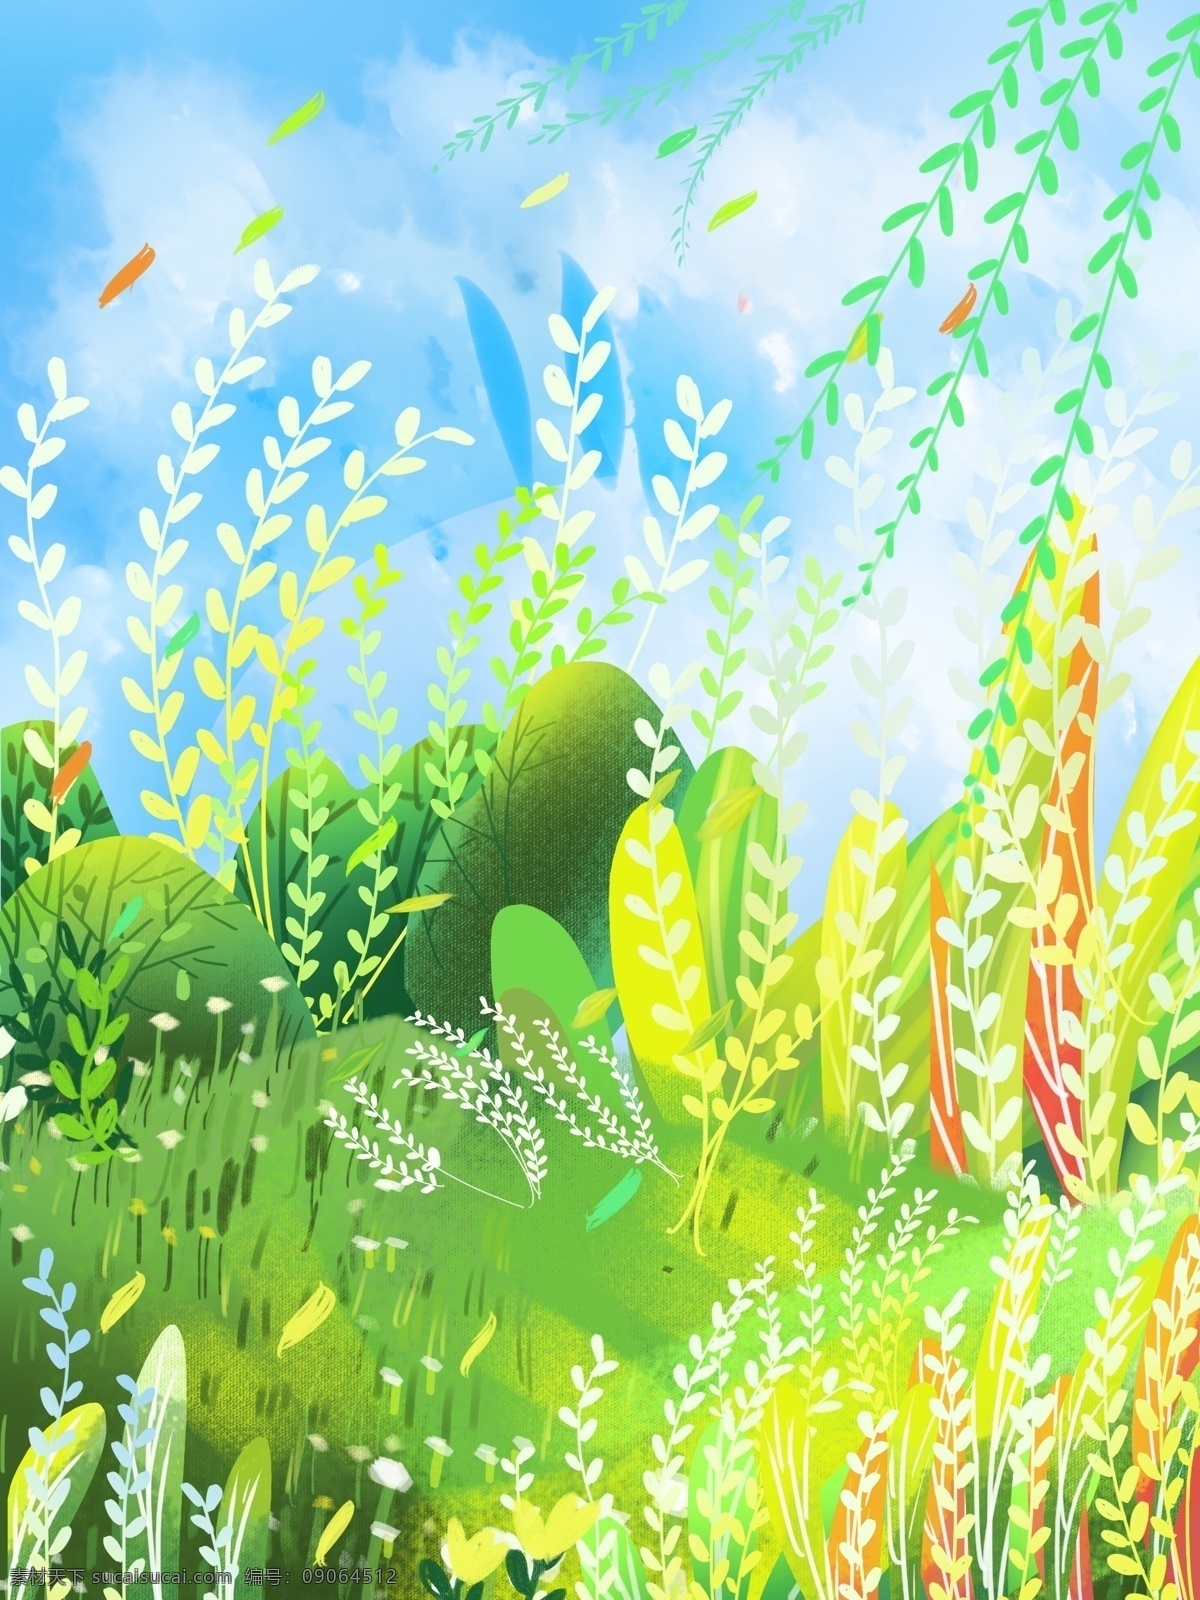 手绘 夏季 草丛 柳条 背景 绿叶 夏天背景 彩绘背景 通用背景 背景展板 背景展板图 背景图